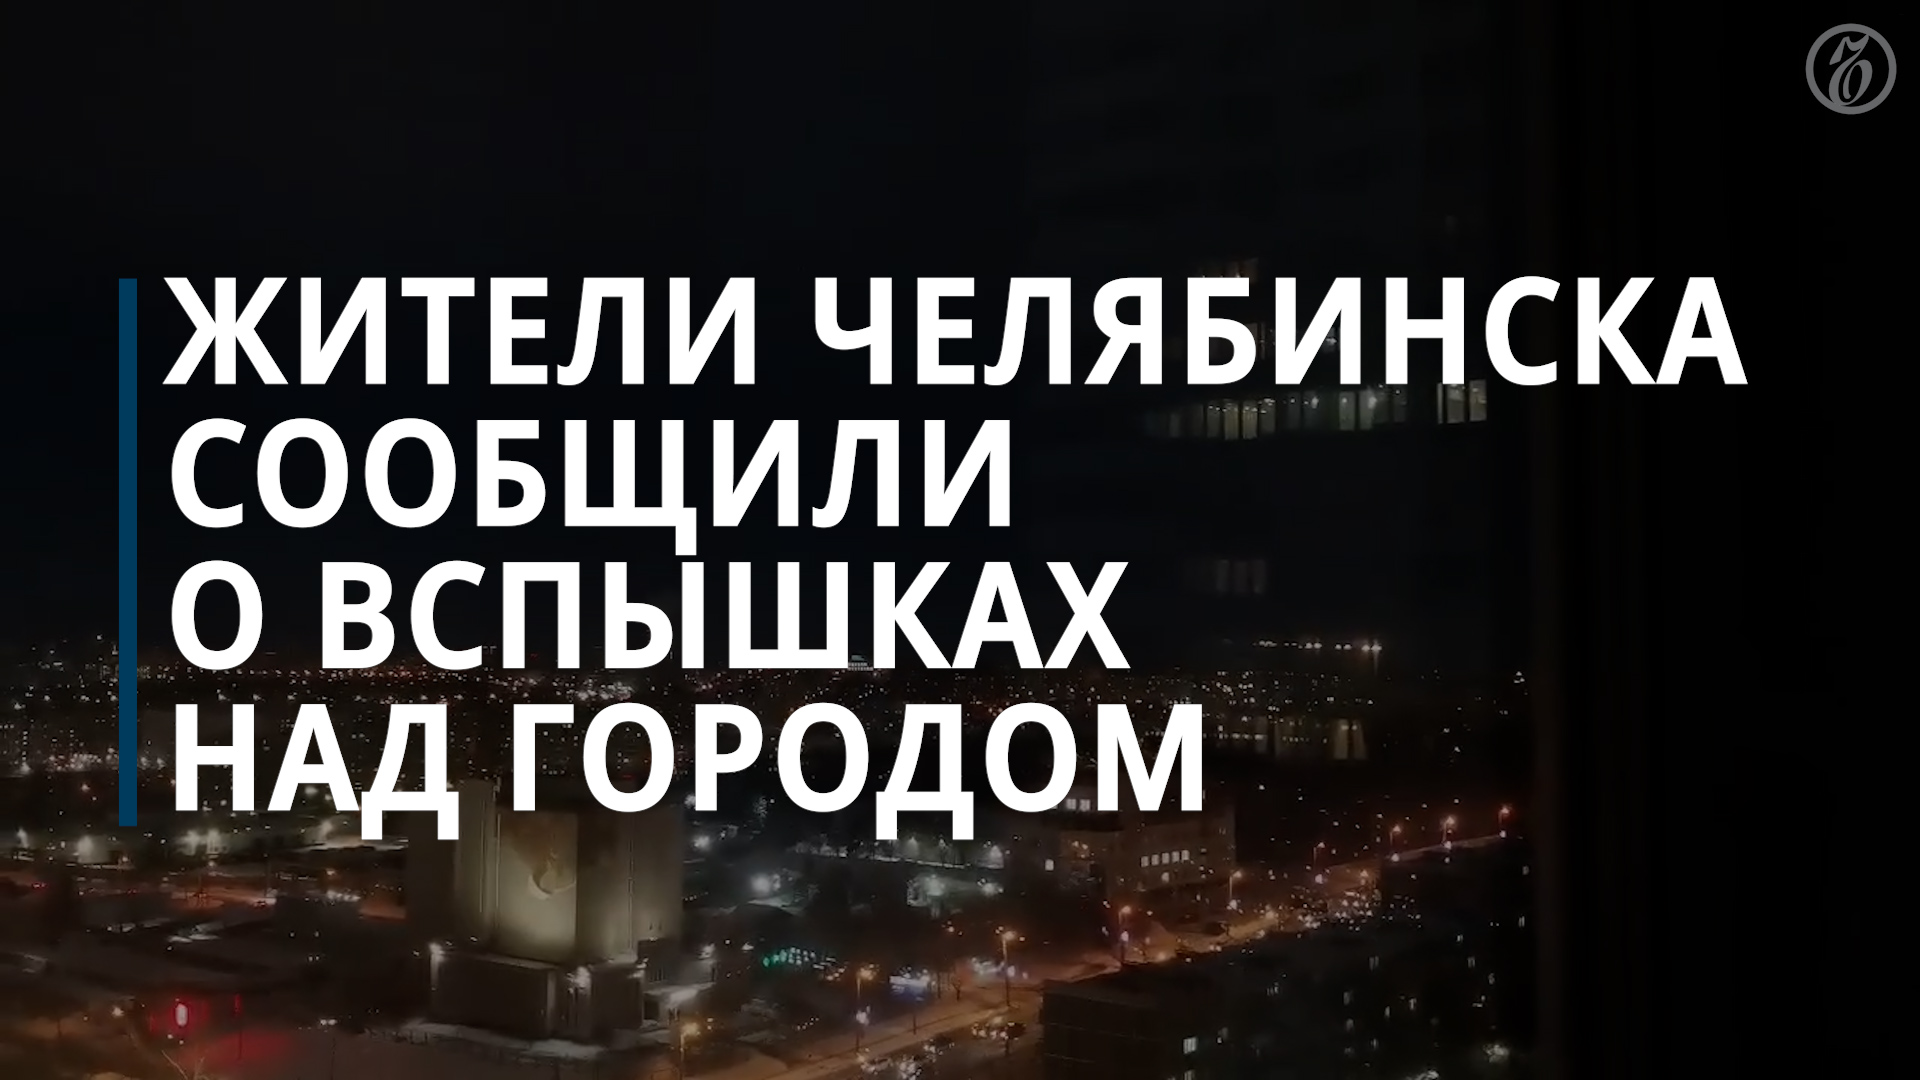 Авария на электросетях стала причиной вспышек в небе над Челябинском — Коммерсантъ